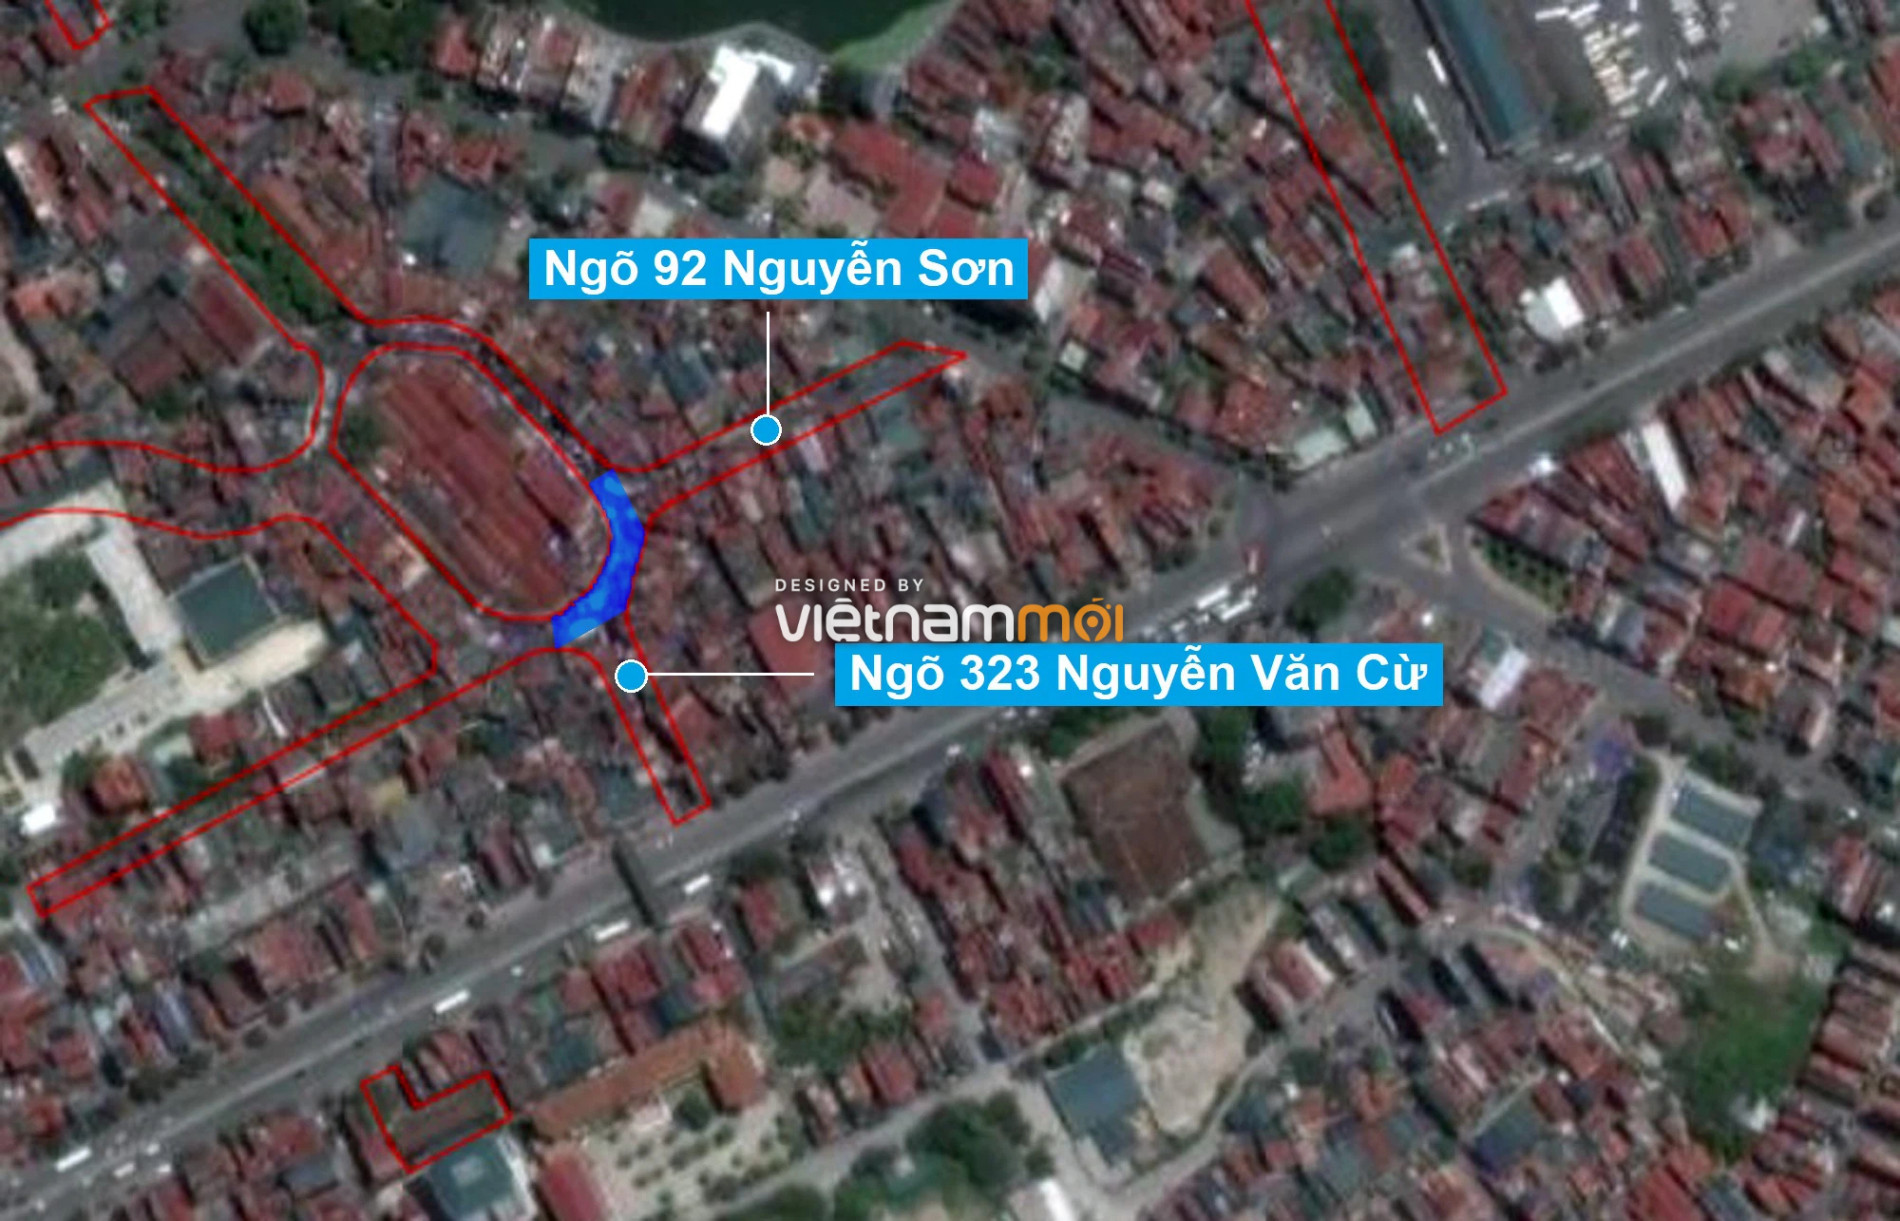 Những khu đất sắp thu hồi để mở đường ở phường Ngọc Lâm, Long Biên, Hà Nội (phần 4) - Ảnh 11.